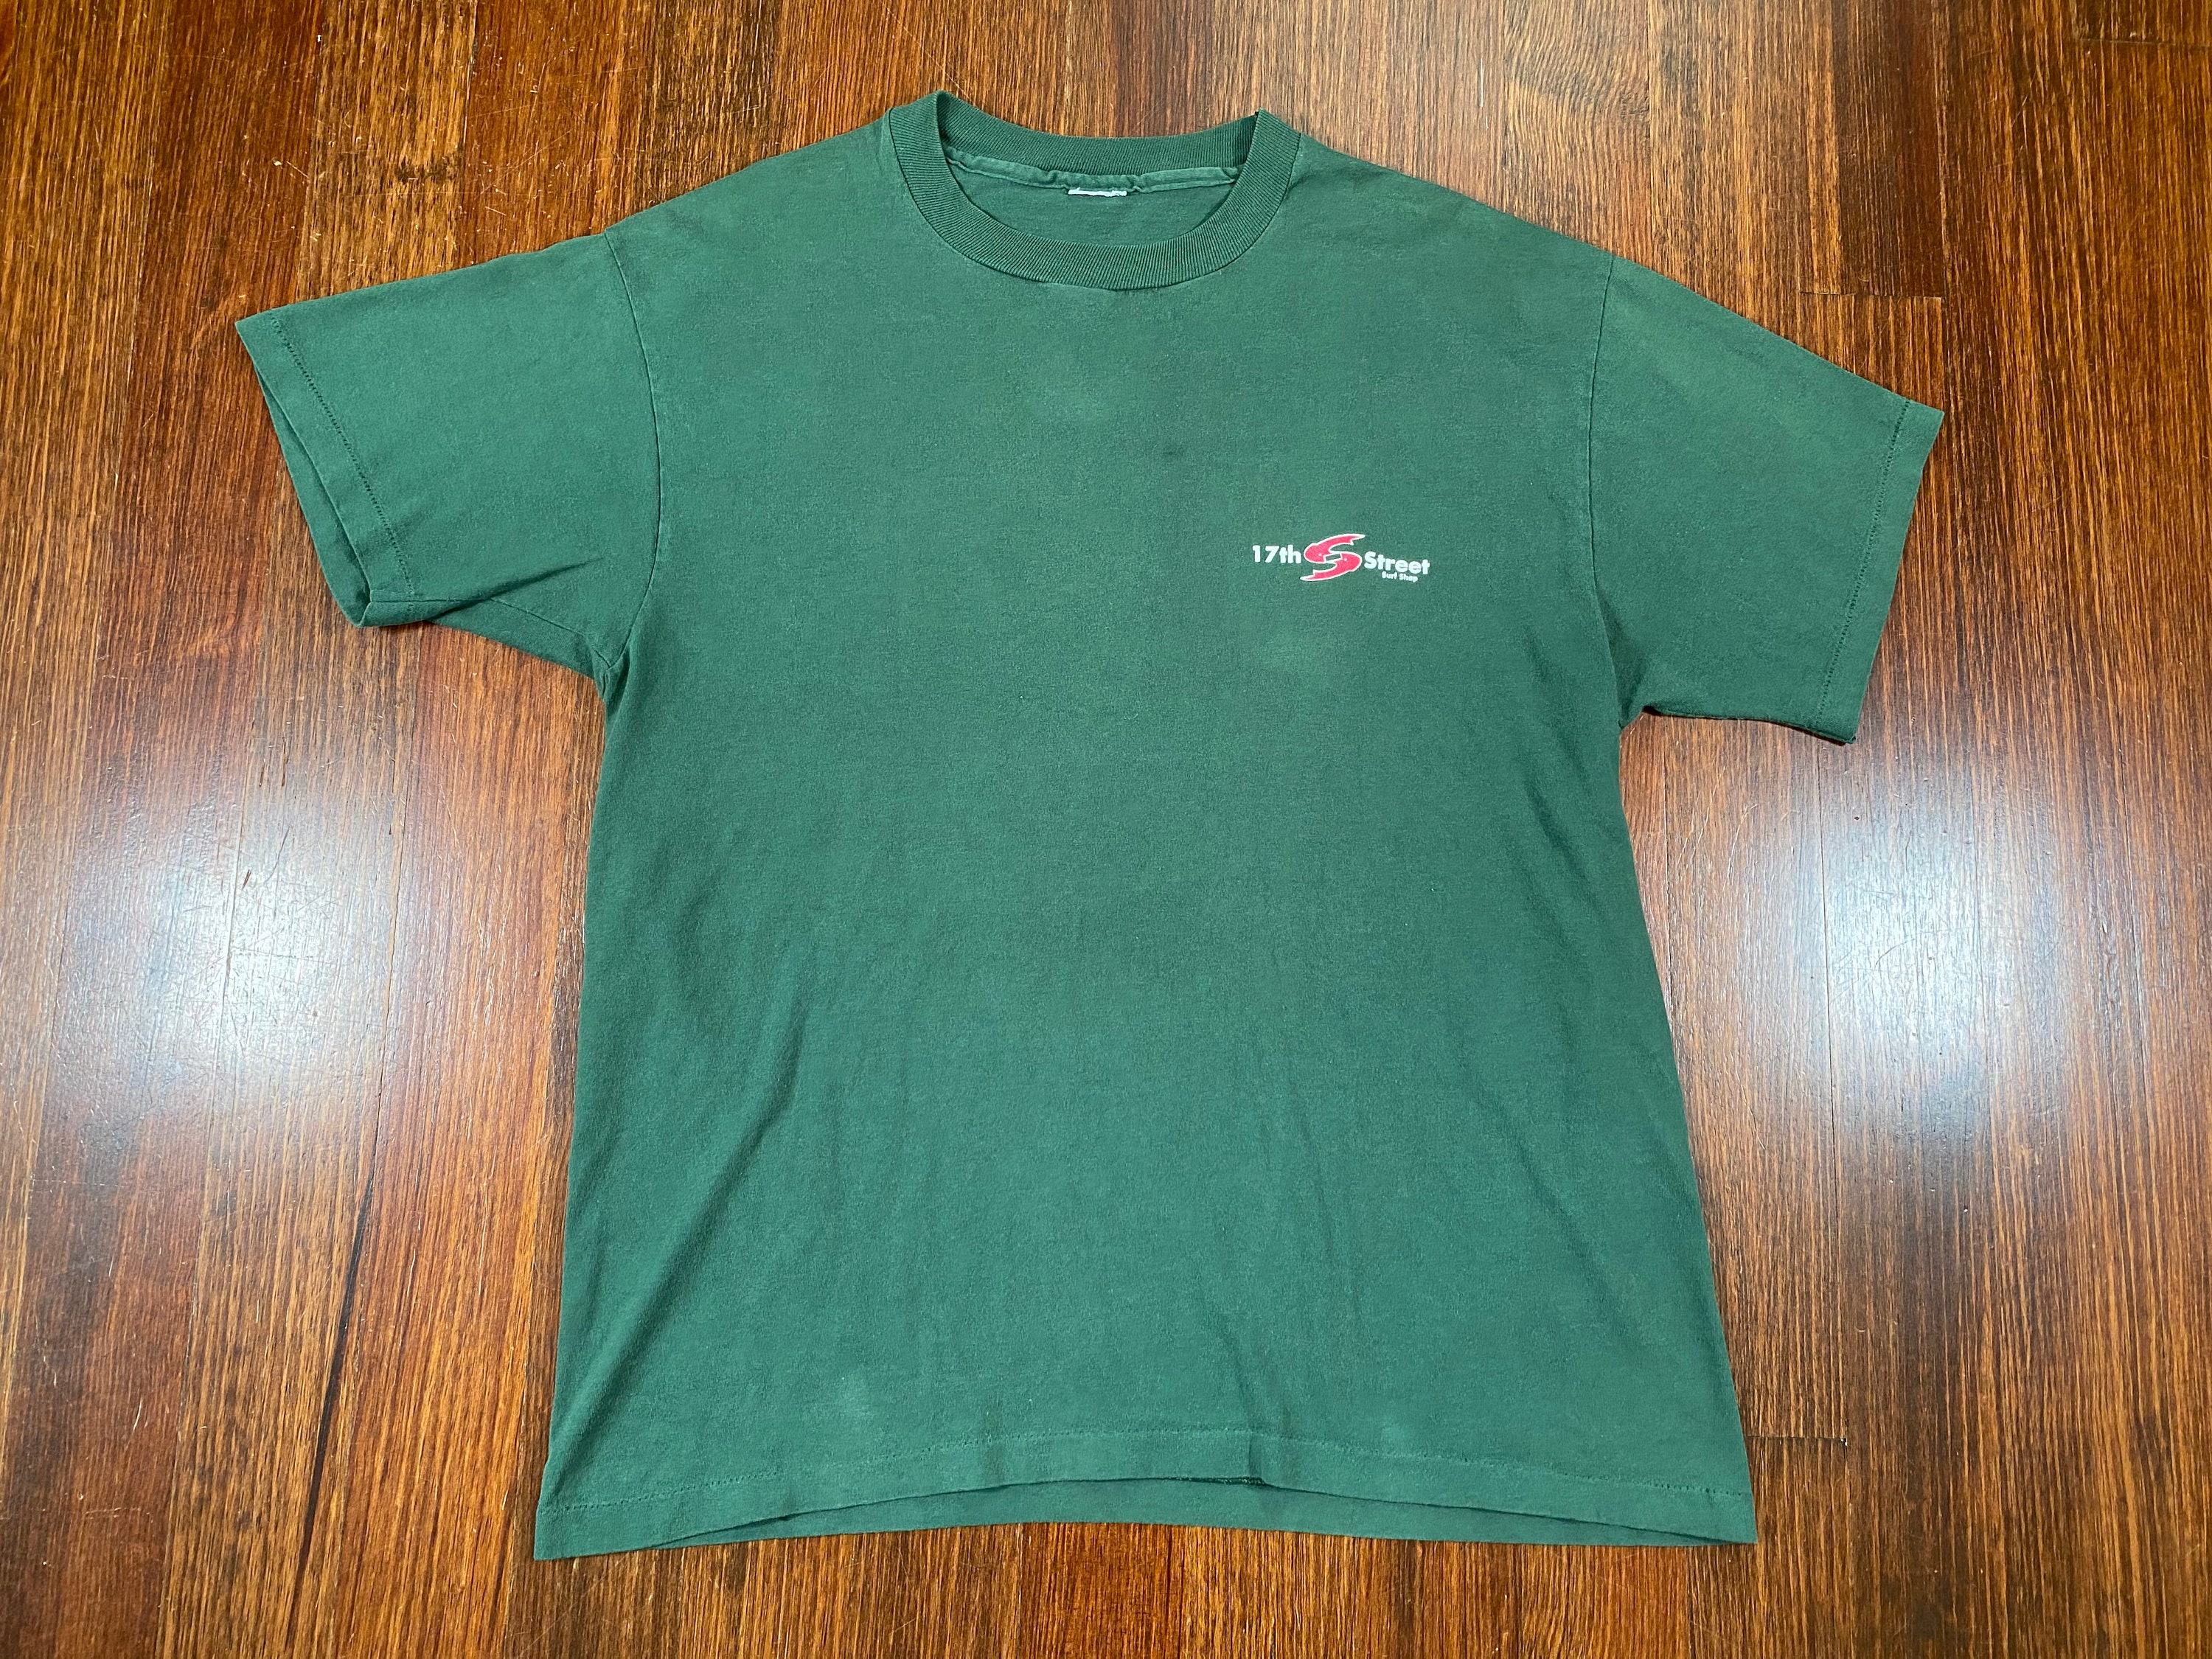 Vintage 17th St Surf Shop tshirt 90s 17th st surf shirt | Etsy